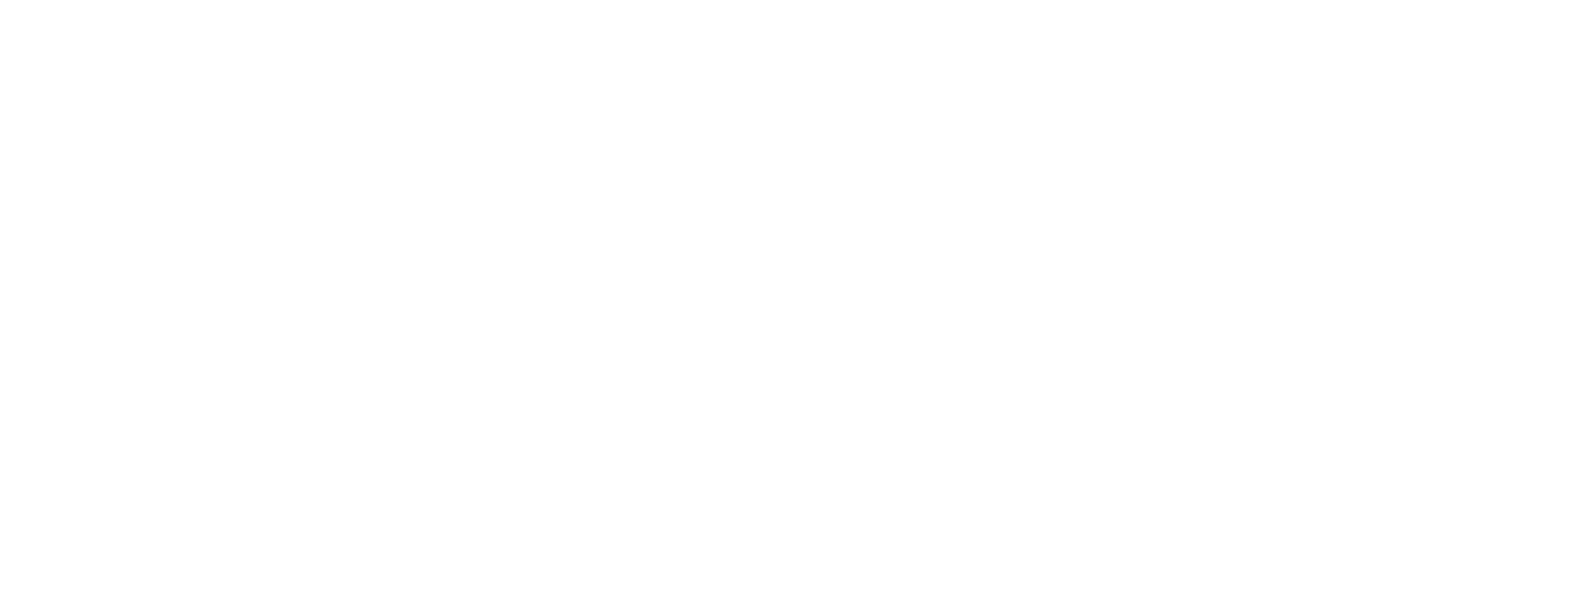 Bumrungrad Hospital logo grand pour les fonds sombres (PNG transparent)